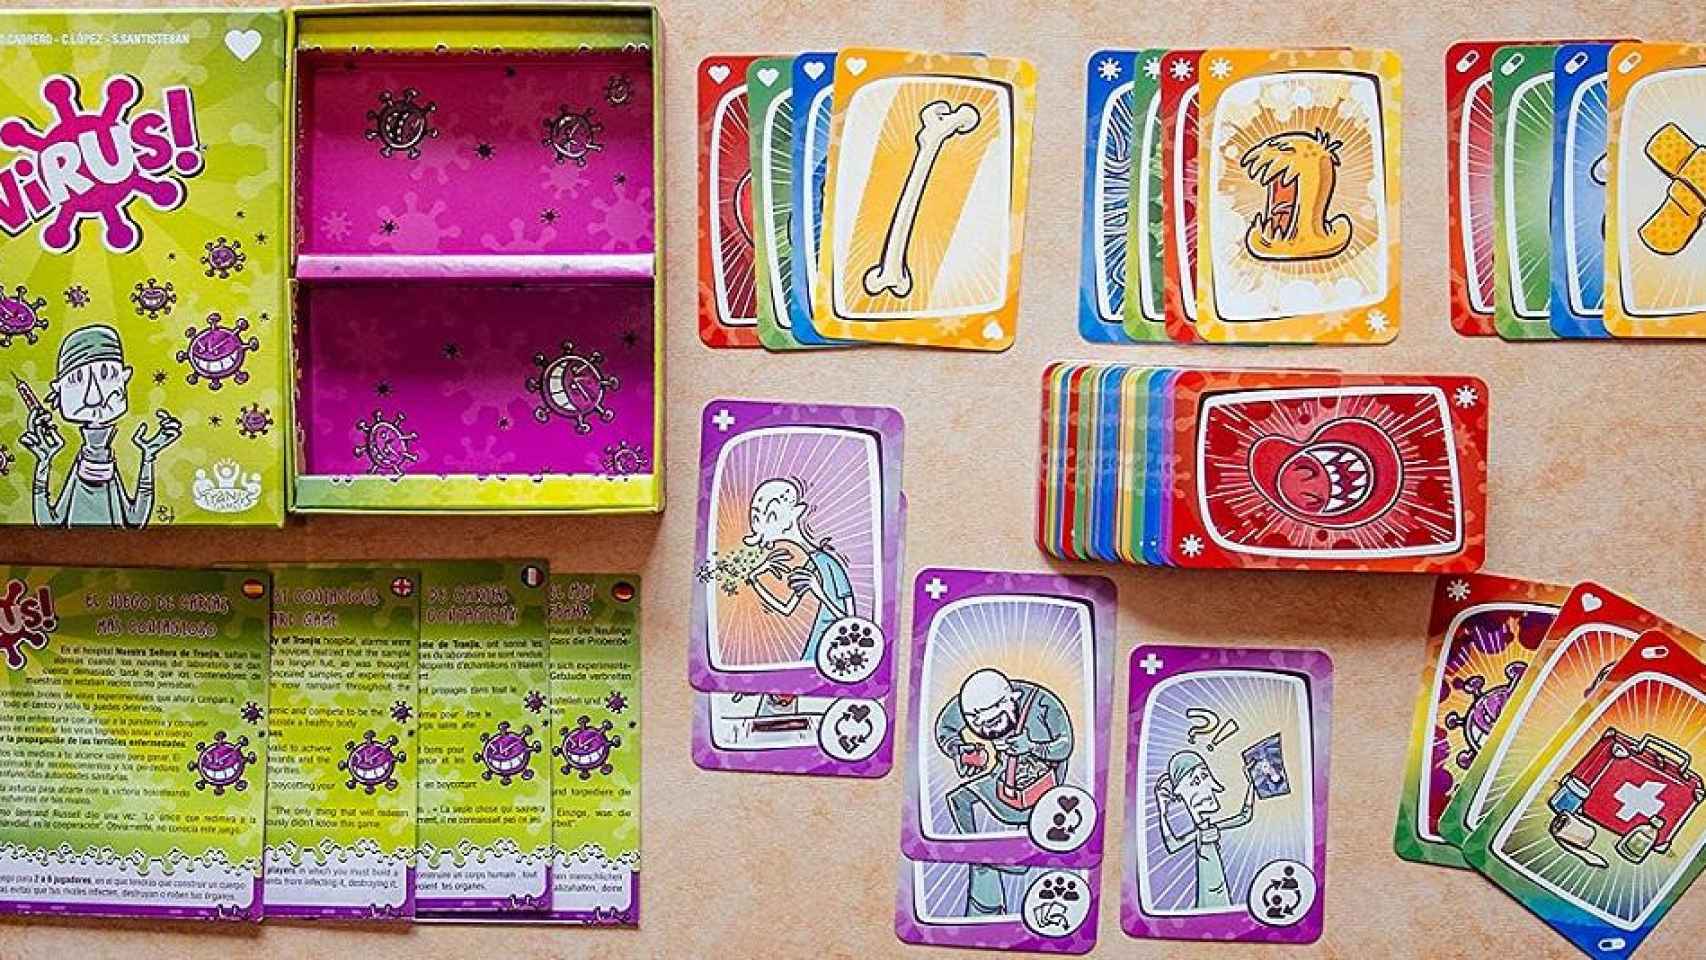 El juego de cartas Virus es uno de los juguetes más vendidos en Amazon / TRANJIS